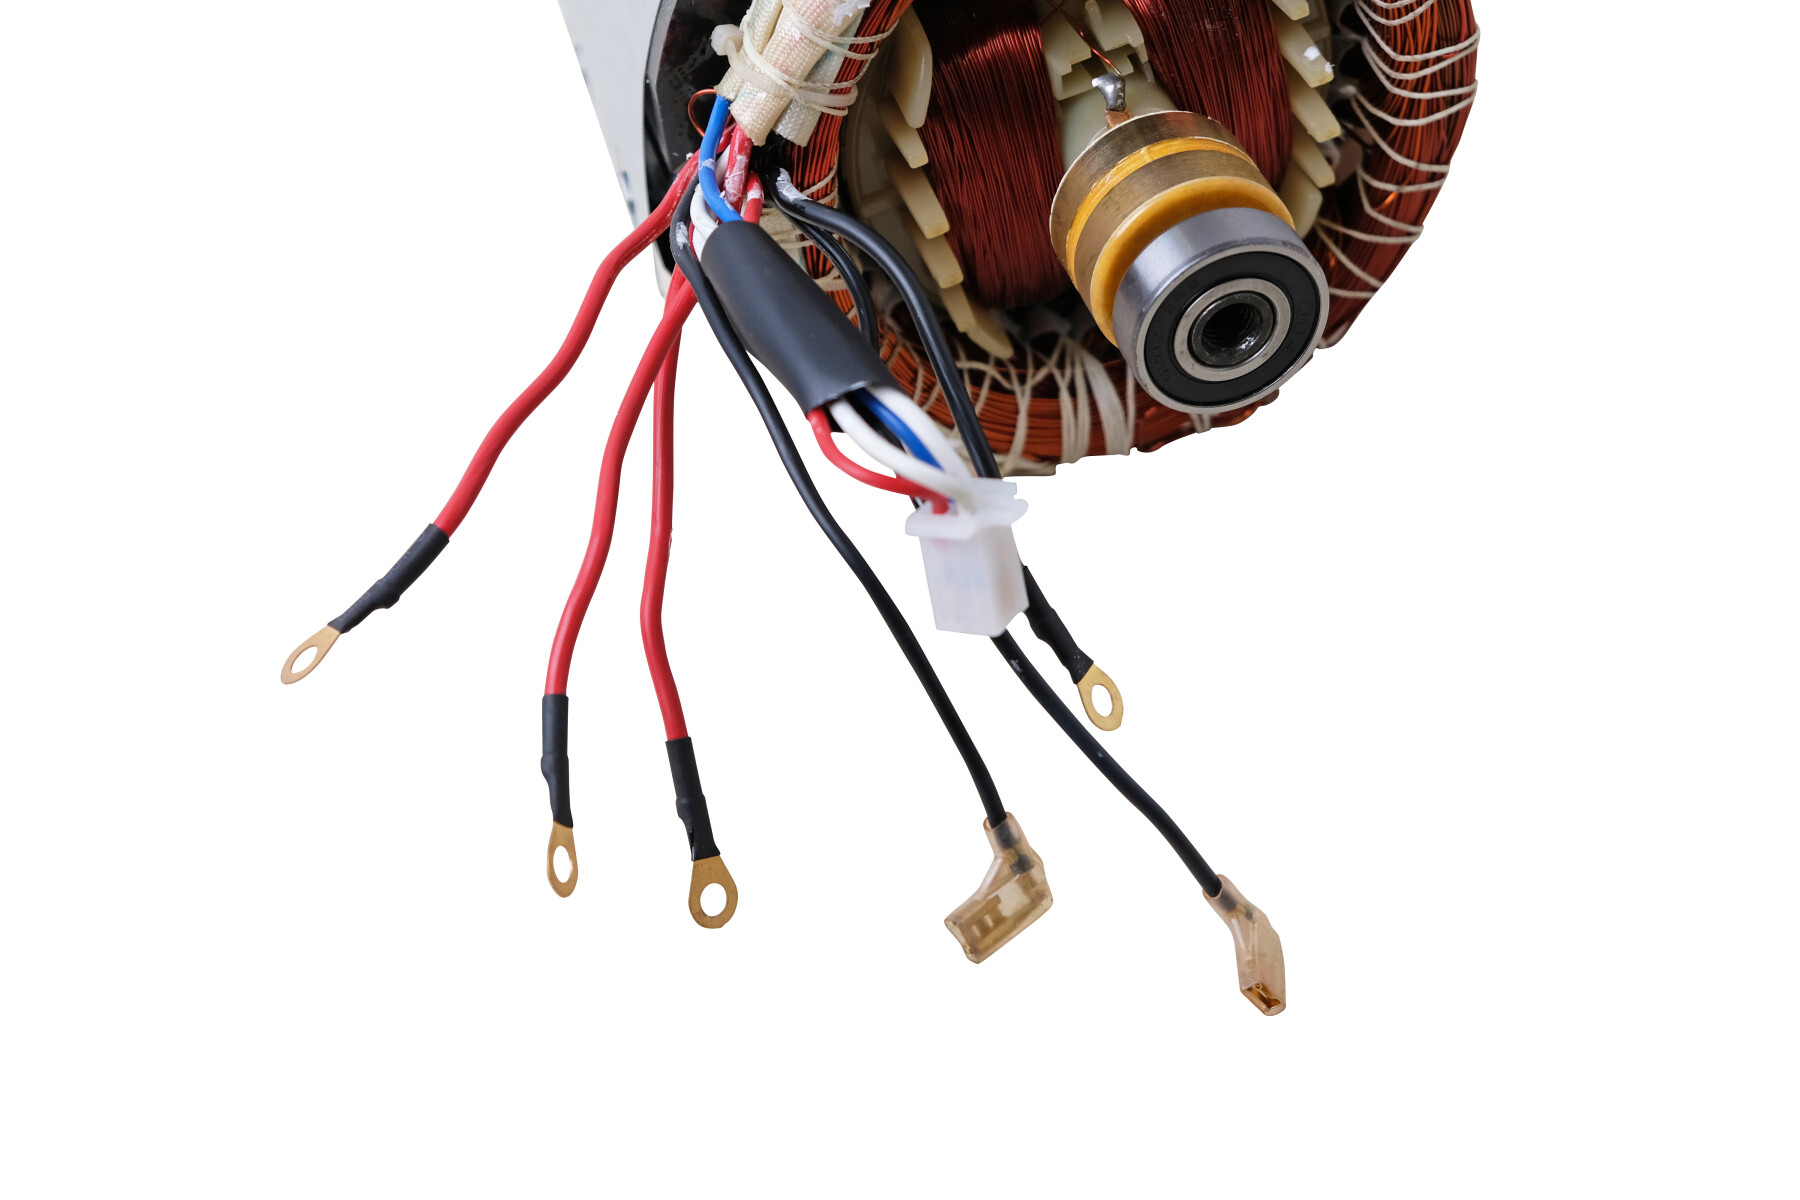 Stromgenerator Stator (Spule) für Stromerzeuger 6,5-7 PS 3-Phase von DeTec.